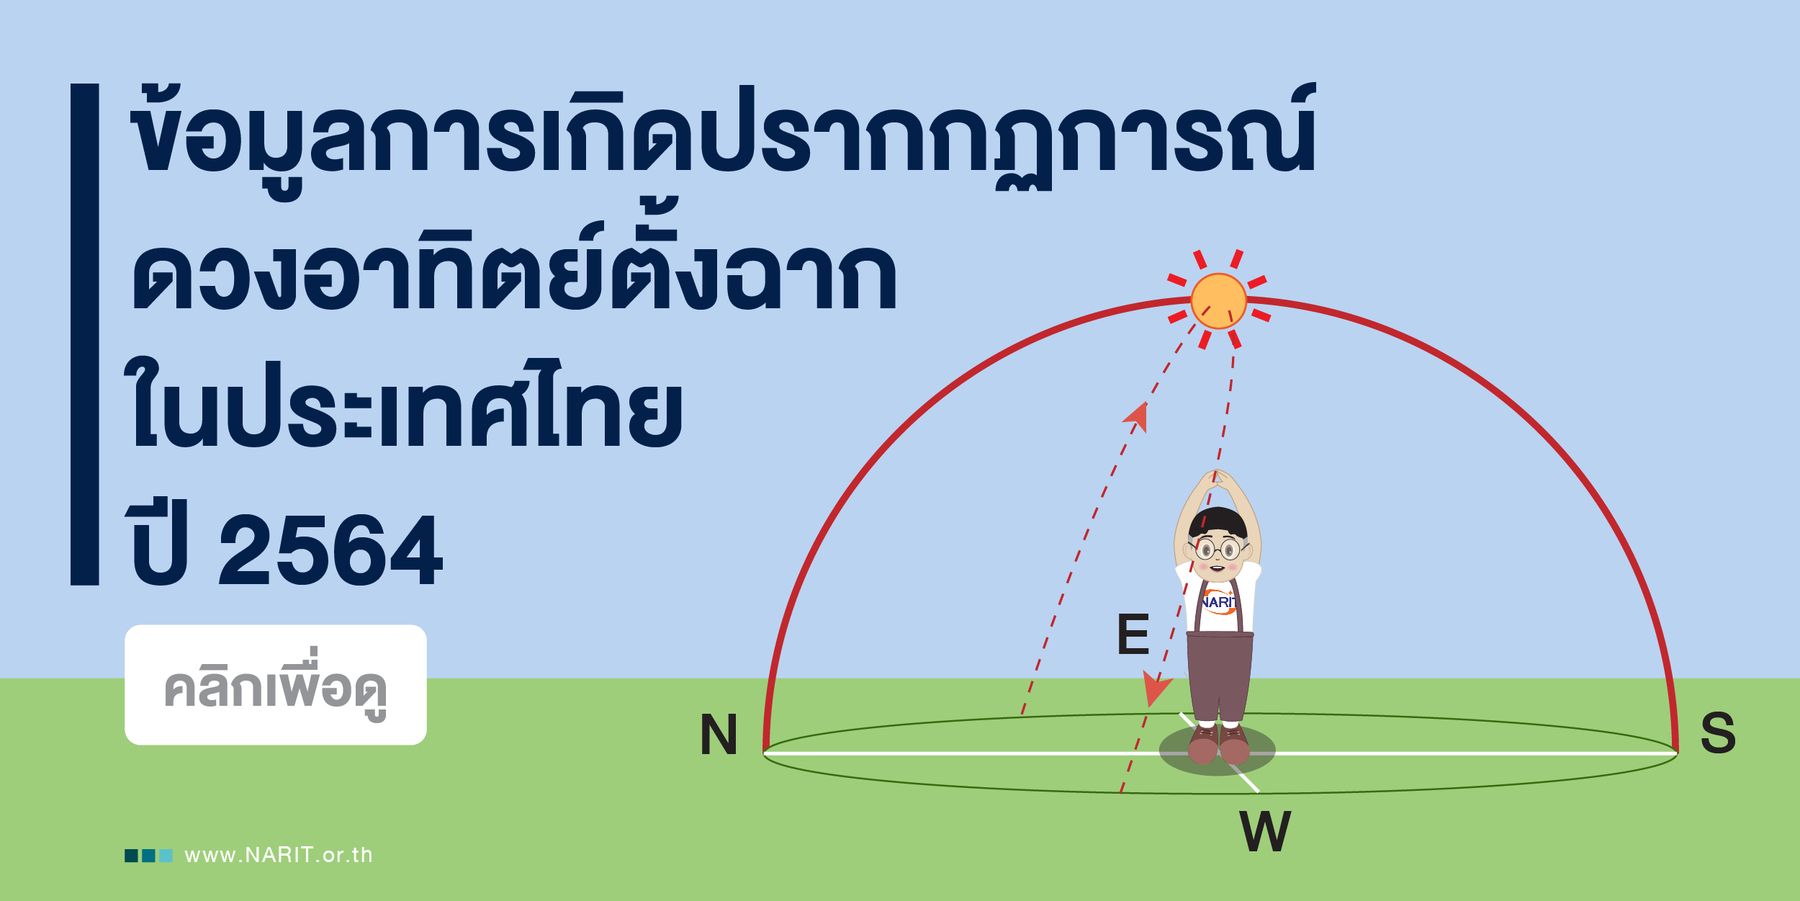 ดวงอาทิตย์ตั้งฉากในประเทศไทย ปี 2564